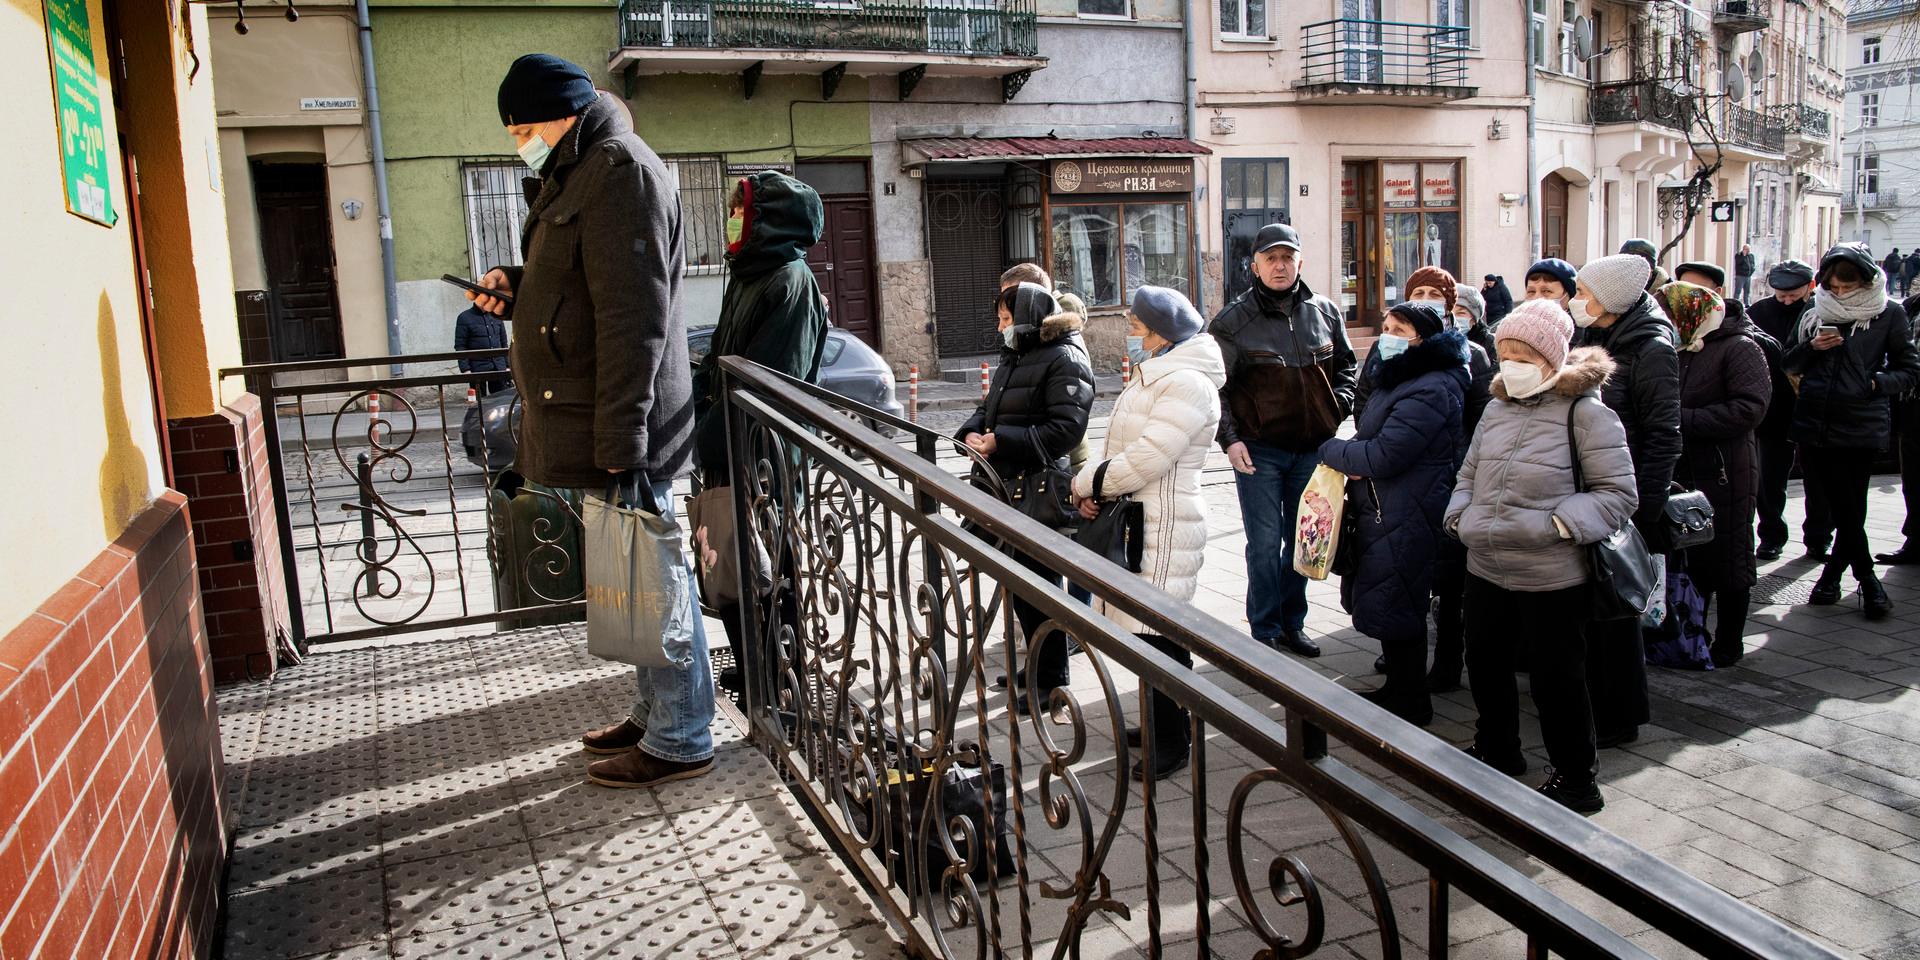 Efter att Ryssland invaderat Ukraina är det en stor oro bland befolkningen, folk köper vapen och hamstrar förnödenheter och lämnar staden för att förenas med sina familjer. Här är det kö till apoteket i Lviv, Ukrainas näst största stad.